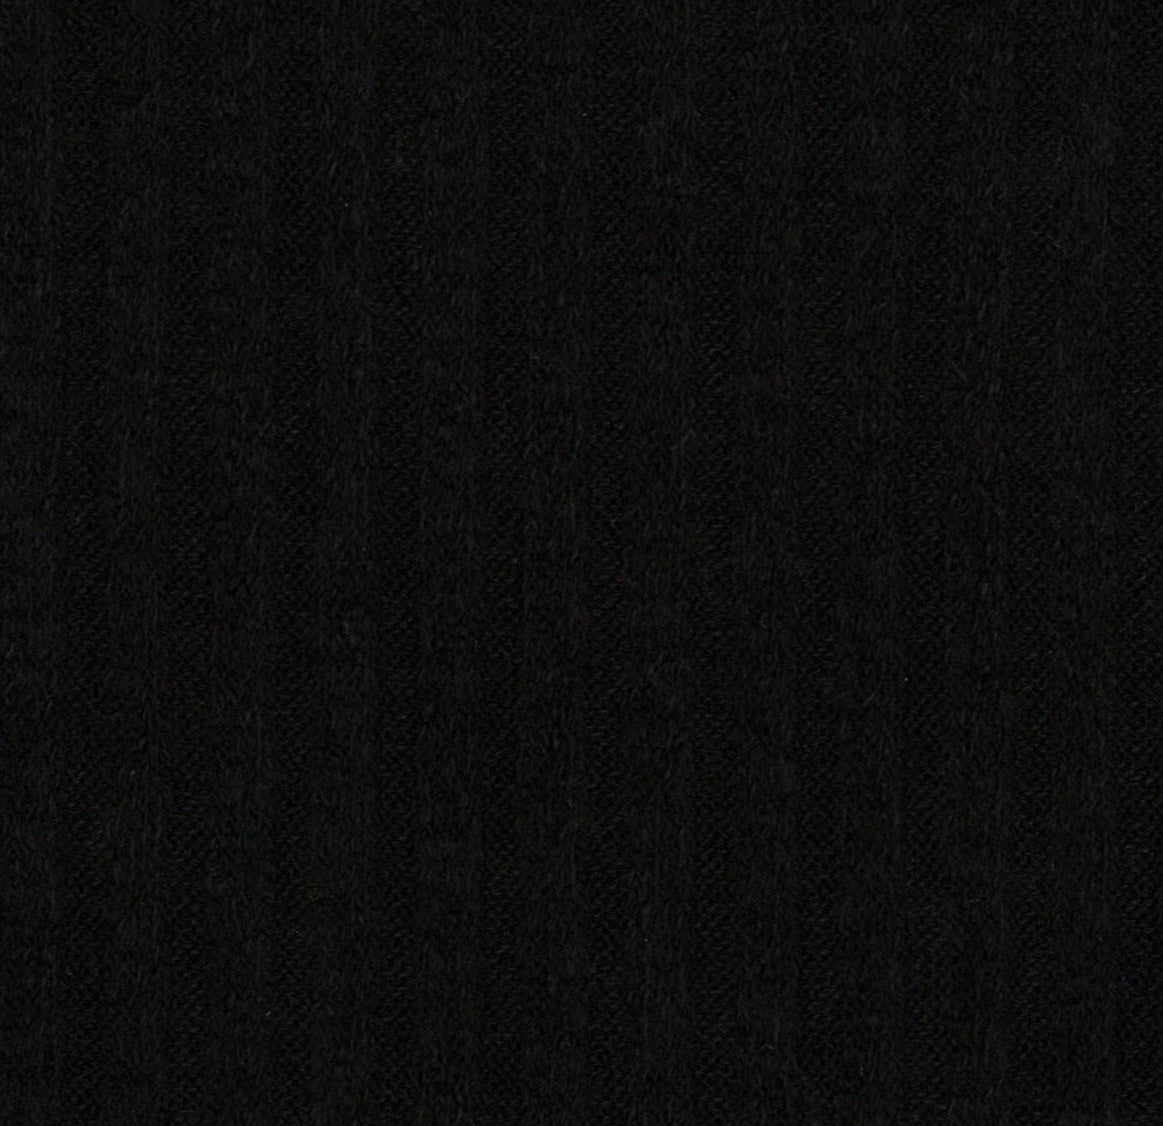 15012-07 Black Rib Plain Dyed Blend 330g/yd 54&quot; black blend knit plain dyed polyester rayon rib spandex Solid Color, Rib - knit fabric - woven fabric - fabric company - fabric wholesale - fabric b2b - fabric factory - high quality fabric - hong kong fabric - fabric hk - acetate fabric - cotton fabric - linen fabric - metallic fabric - nylon fabric - polyester fabric - spandex fabric - chun wing hing - cwh hk - fabric worldwide ship - 針織布 - 梳織布 - 布料公司- 布料批發 - 香港布料 - 秦榮興